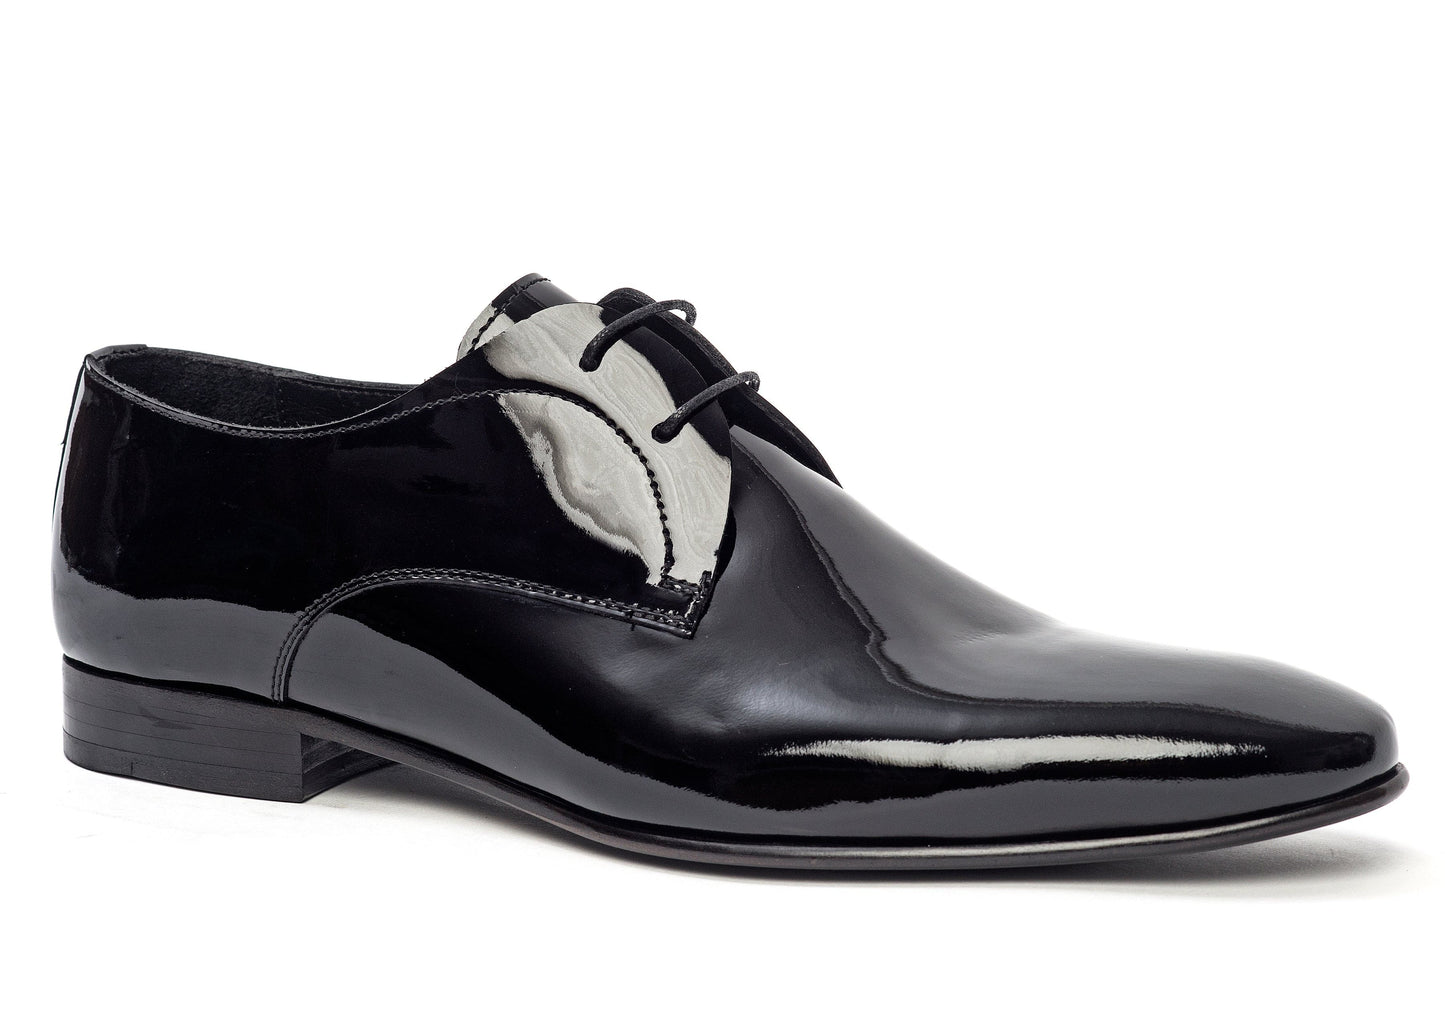 Black Patent Formal Dress Shoes for Men 173133-BK.